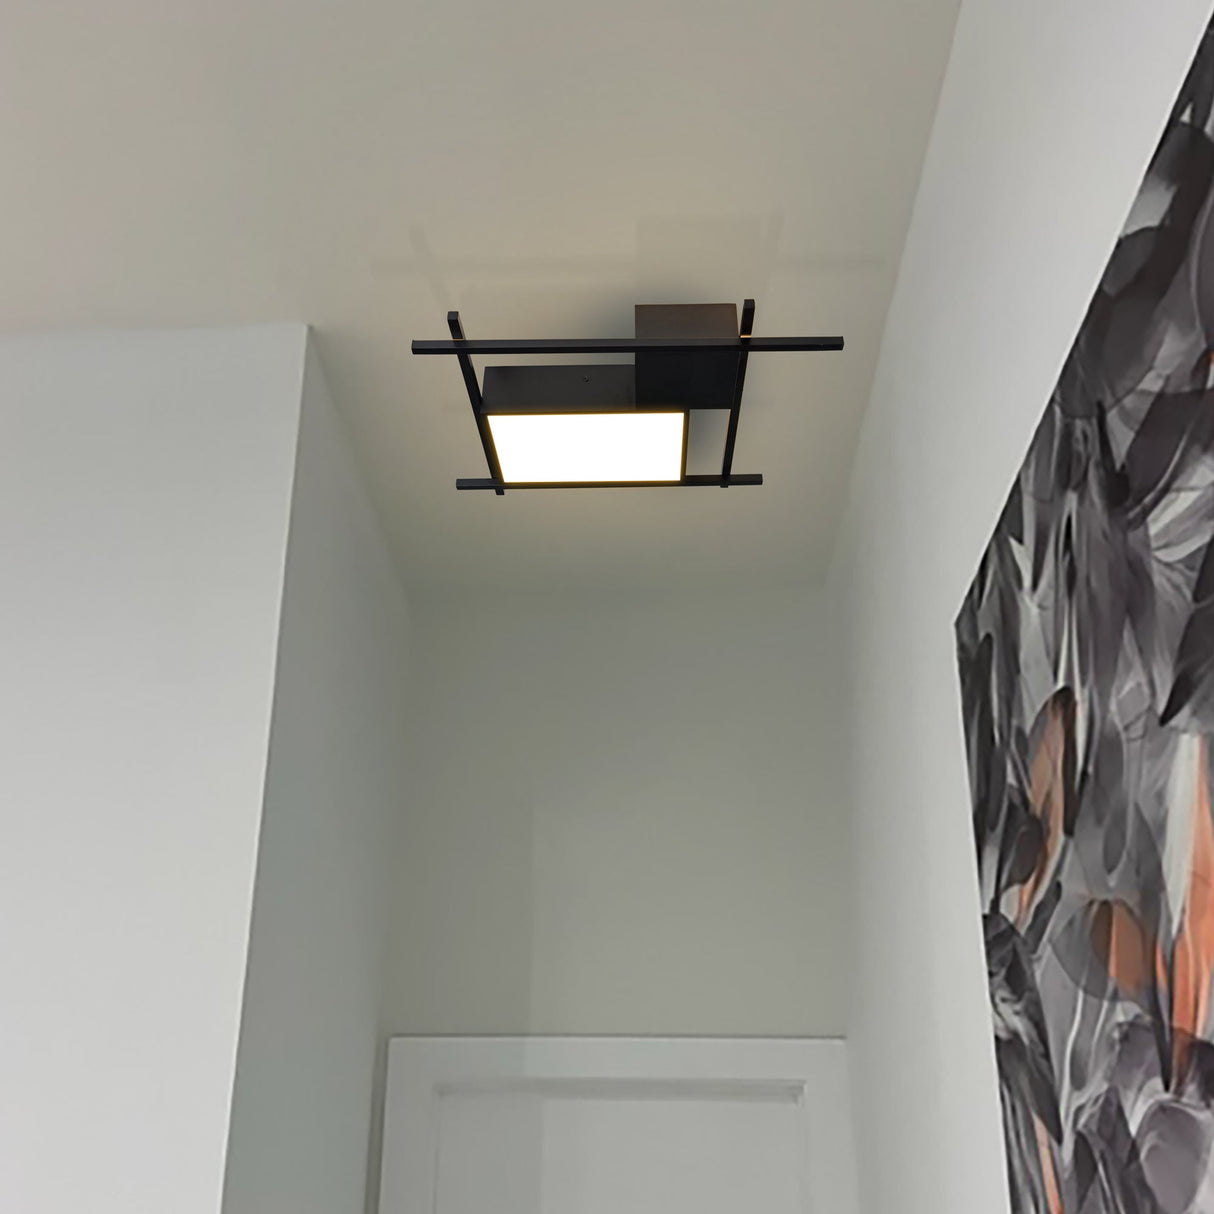 VONN Radium VRCF49304BL 19" Integrated LED ETL Certified Ceiling Lighting Rectangular Semi Flush in Black